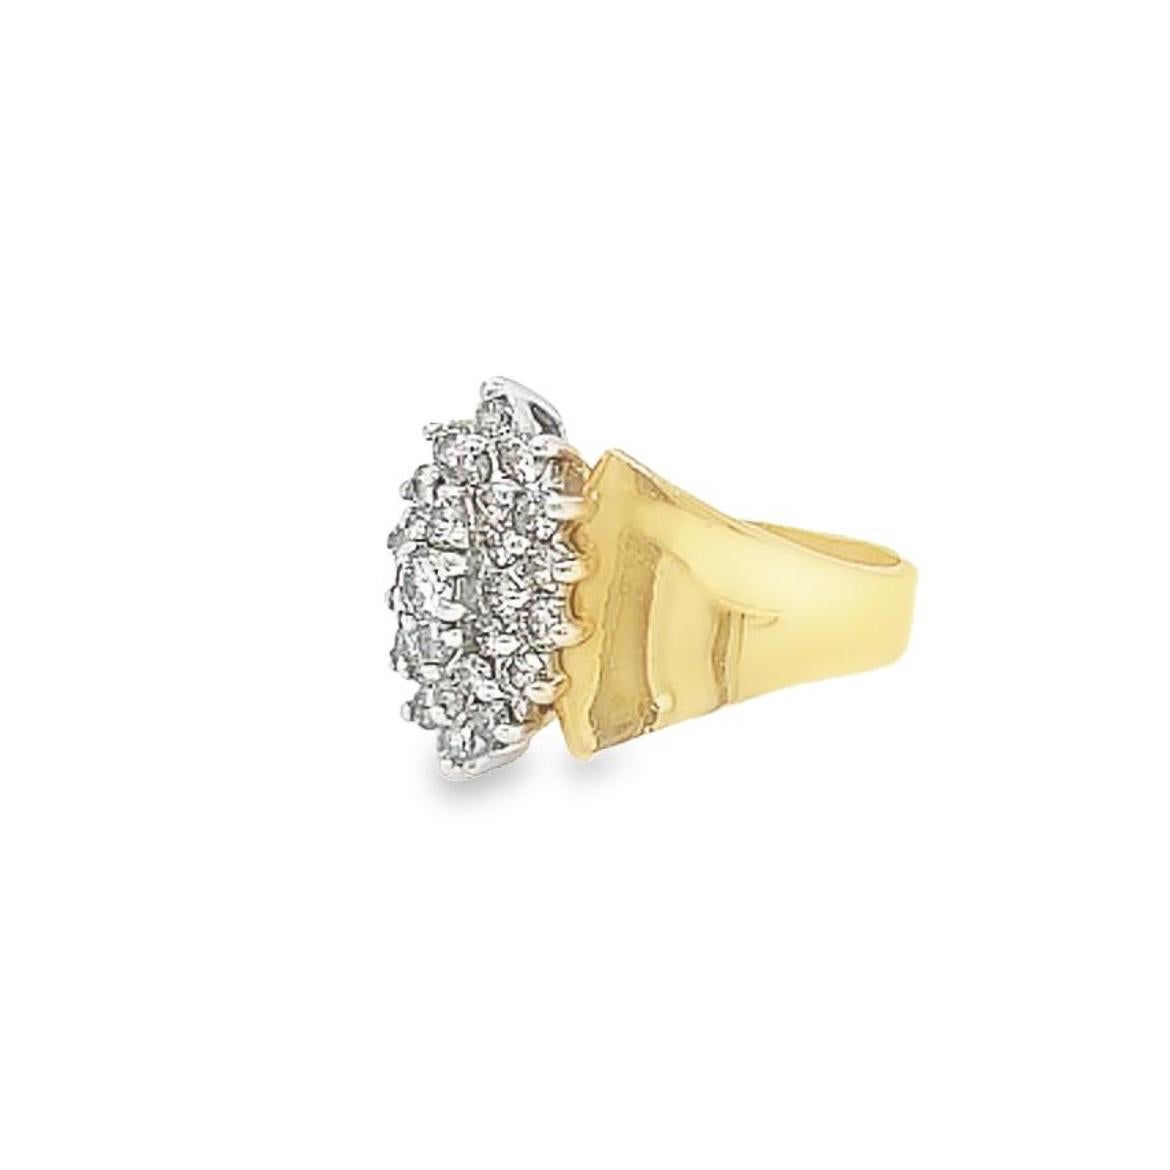 Glamourös, raffiniert und absolut einzigartig - dieser Ring ist ein wunderschönes Statement. Vintage-Ring aus 14 Karat Gelbgold mit 29 runden Diamanten im Brillantschliff mit einem Gewicht von ca. 2,58ctw. Die Diamanten sind in Zacken gefasst und